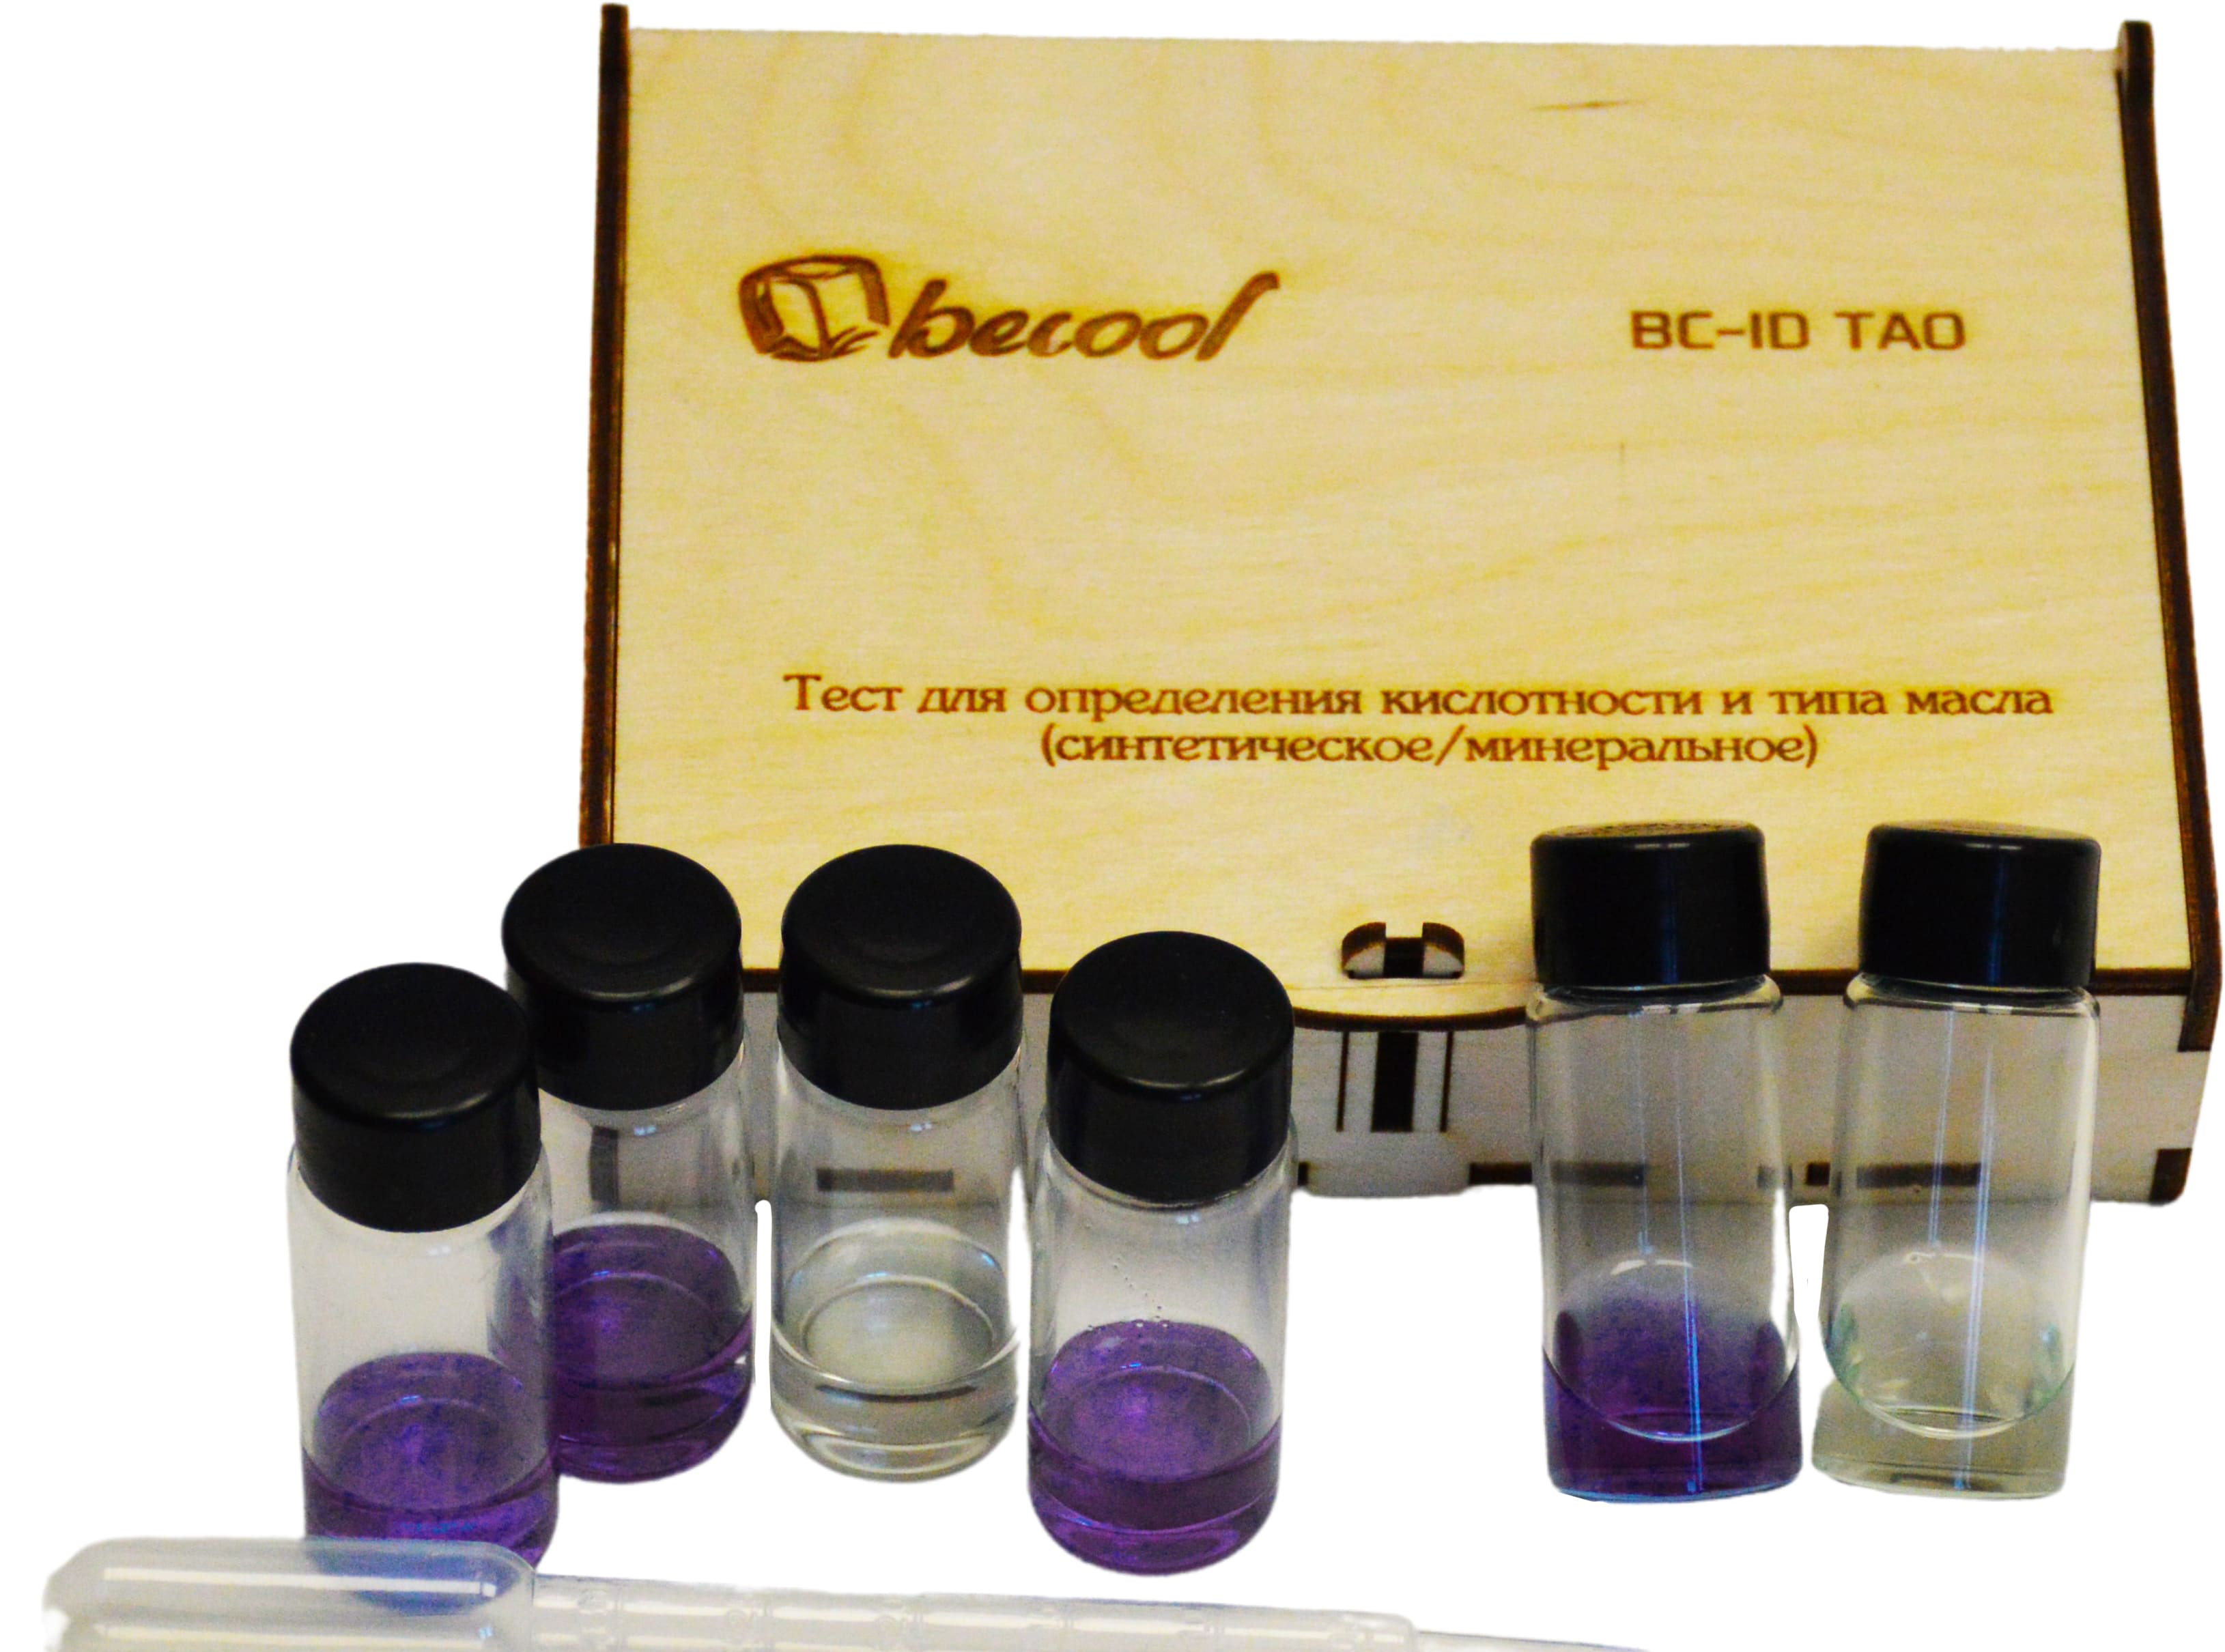 Тест для определения кислотности и типа масла BC-ID TAO